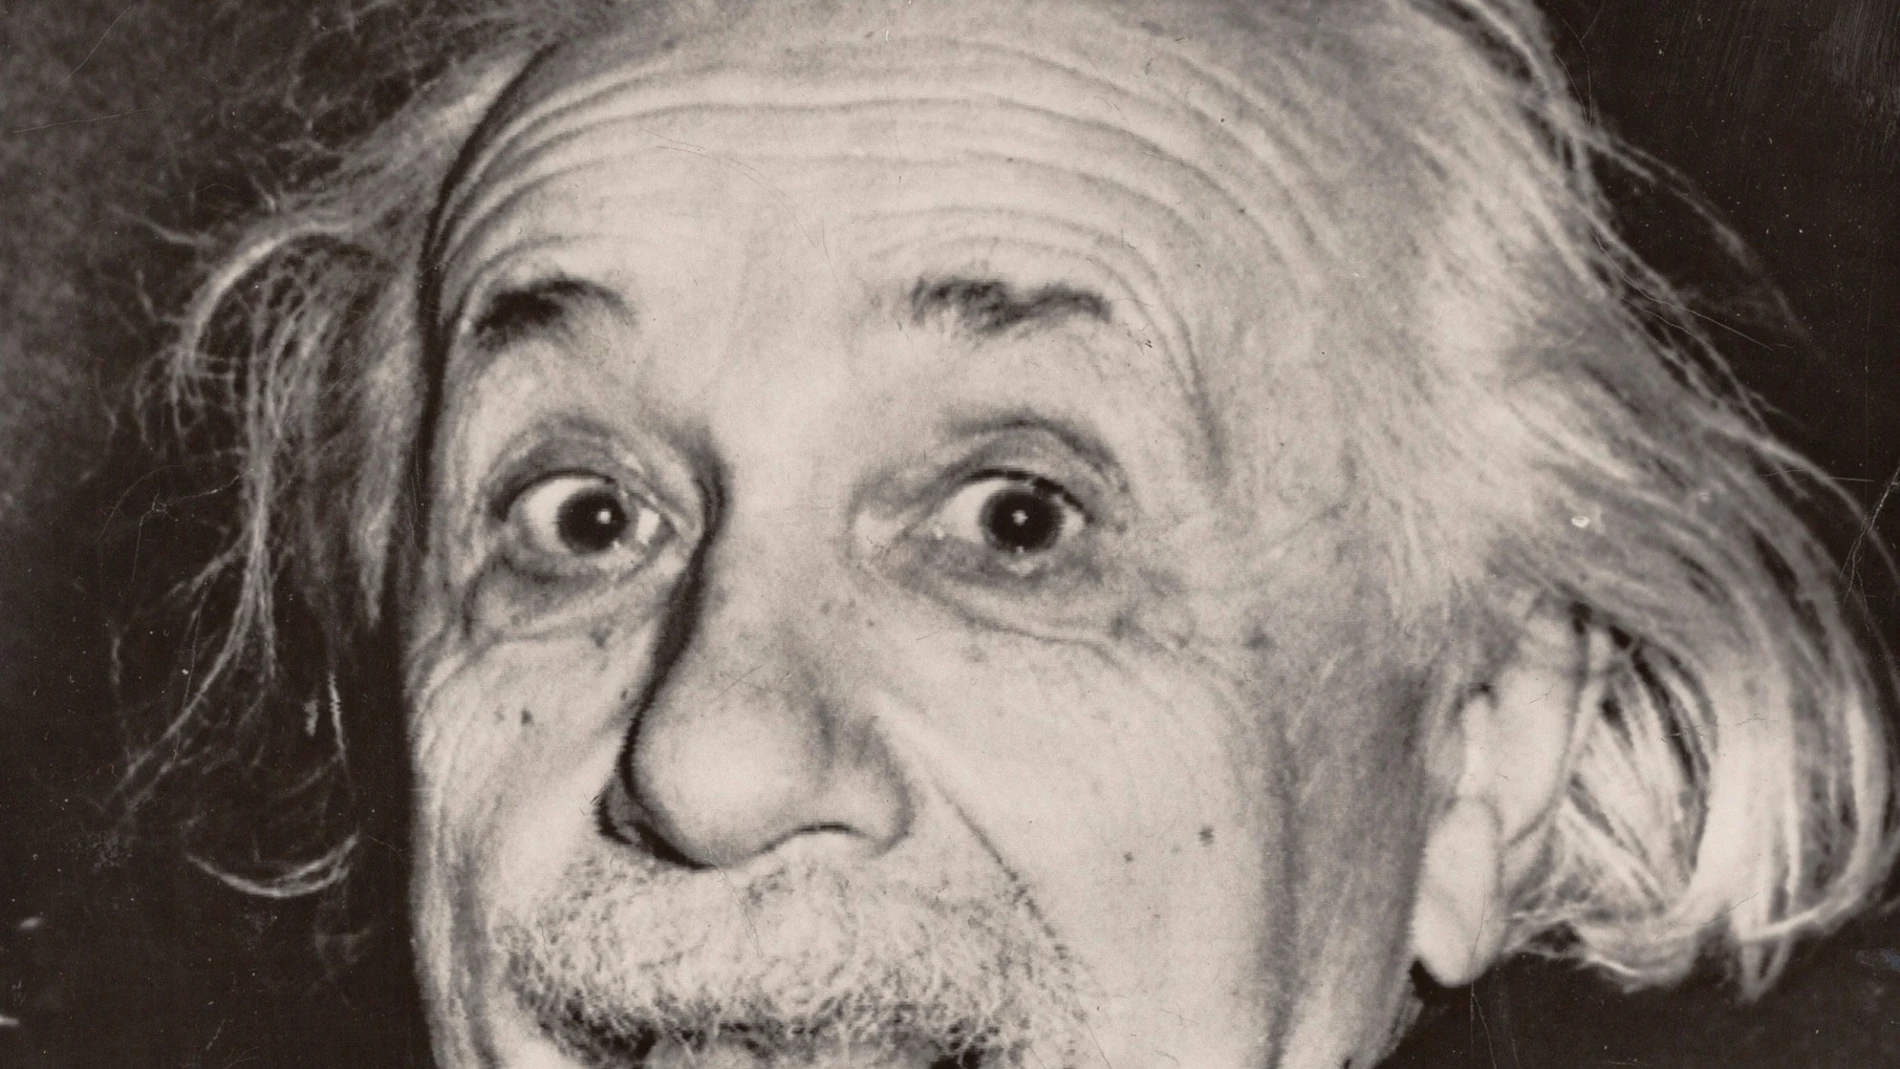 GRAF1175. VIENA, 05/05/2020.- La copia más antigua que se conoce de la icónica fotografía de Albert Einstein (1879-1955) sacando la lengua será subastada el 8 de mayo por la galería vienesa Westlicht. La instantánea de 1951 es obra del fotógrafo reportero estadounidense Arthur Sasse (1908-1975). Tamaño de la copia en subasta: 15,8 por 14,5 centímetros.